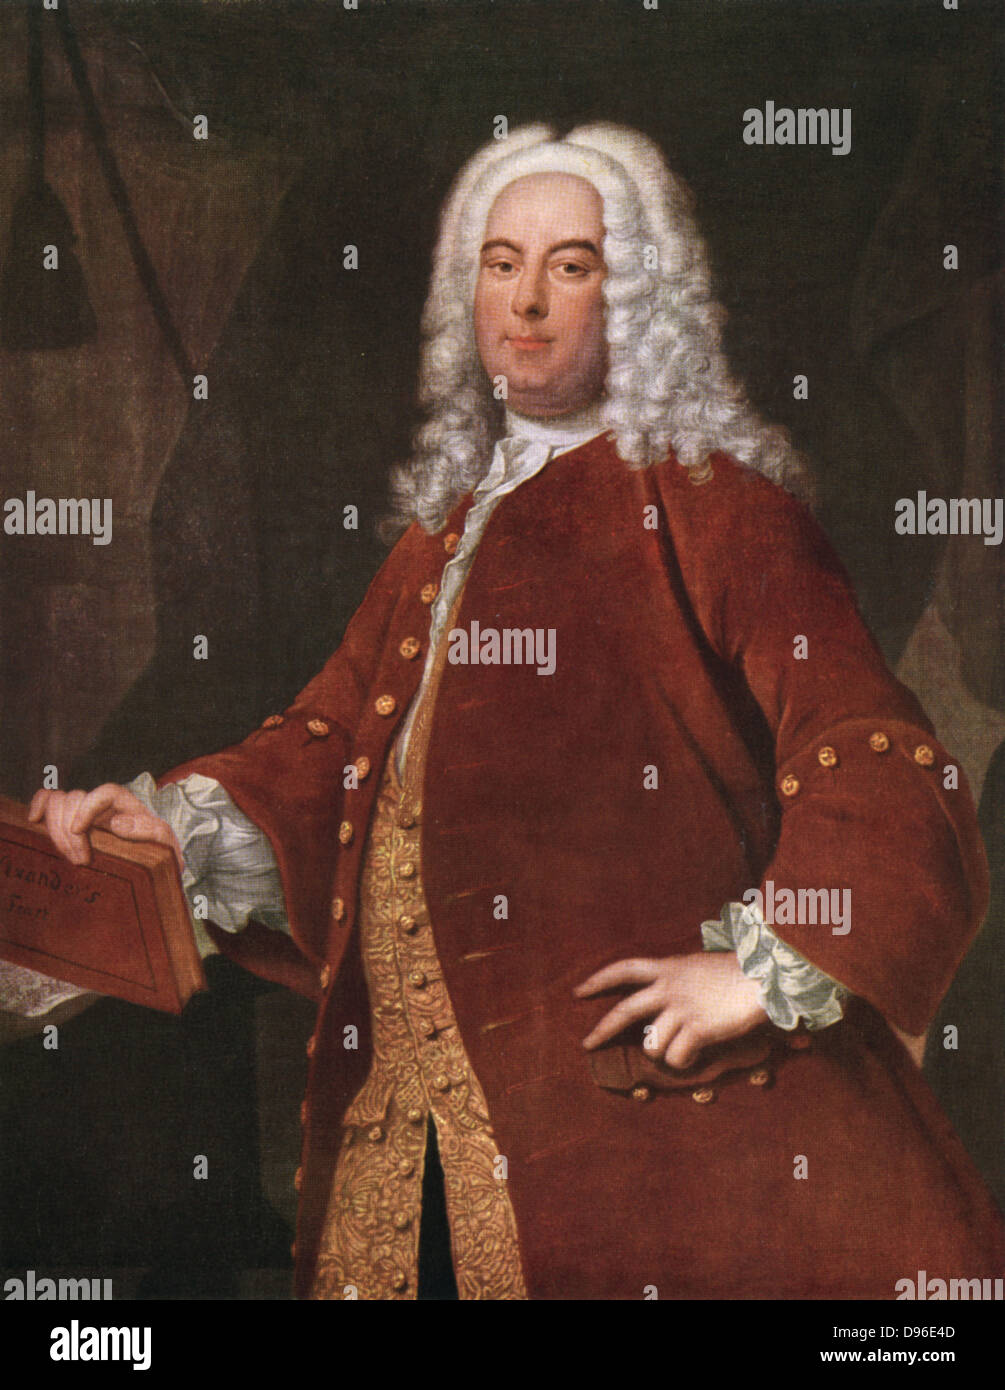 George Frederick Handel (1685-1759), compositor alemán-inglés nacido en Halle. Después del retrato de Thomas Hudson . Foto de stock